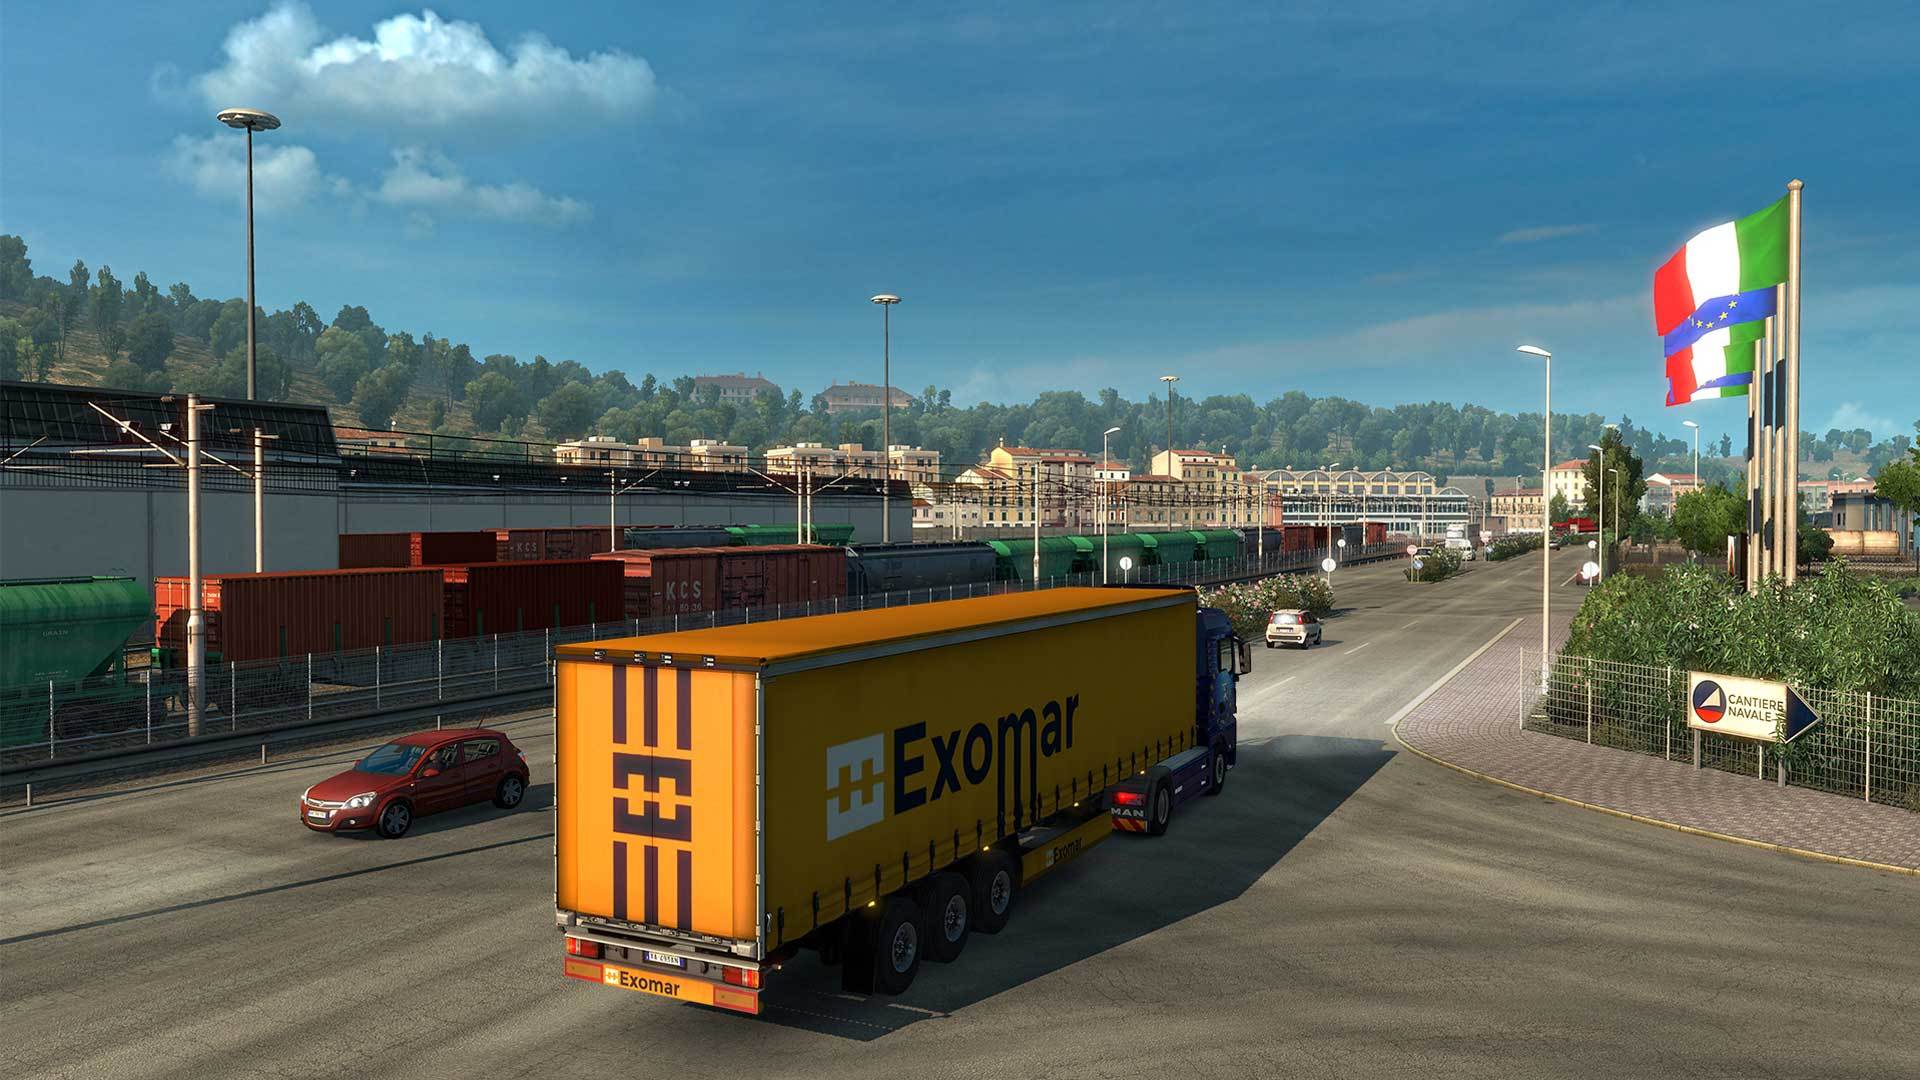 Buy Euro Truck Simulator 2 - Italia DLC PC Game